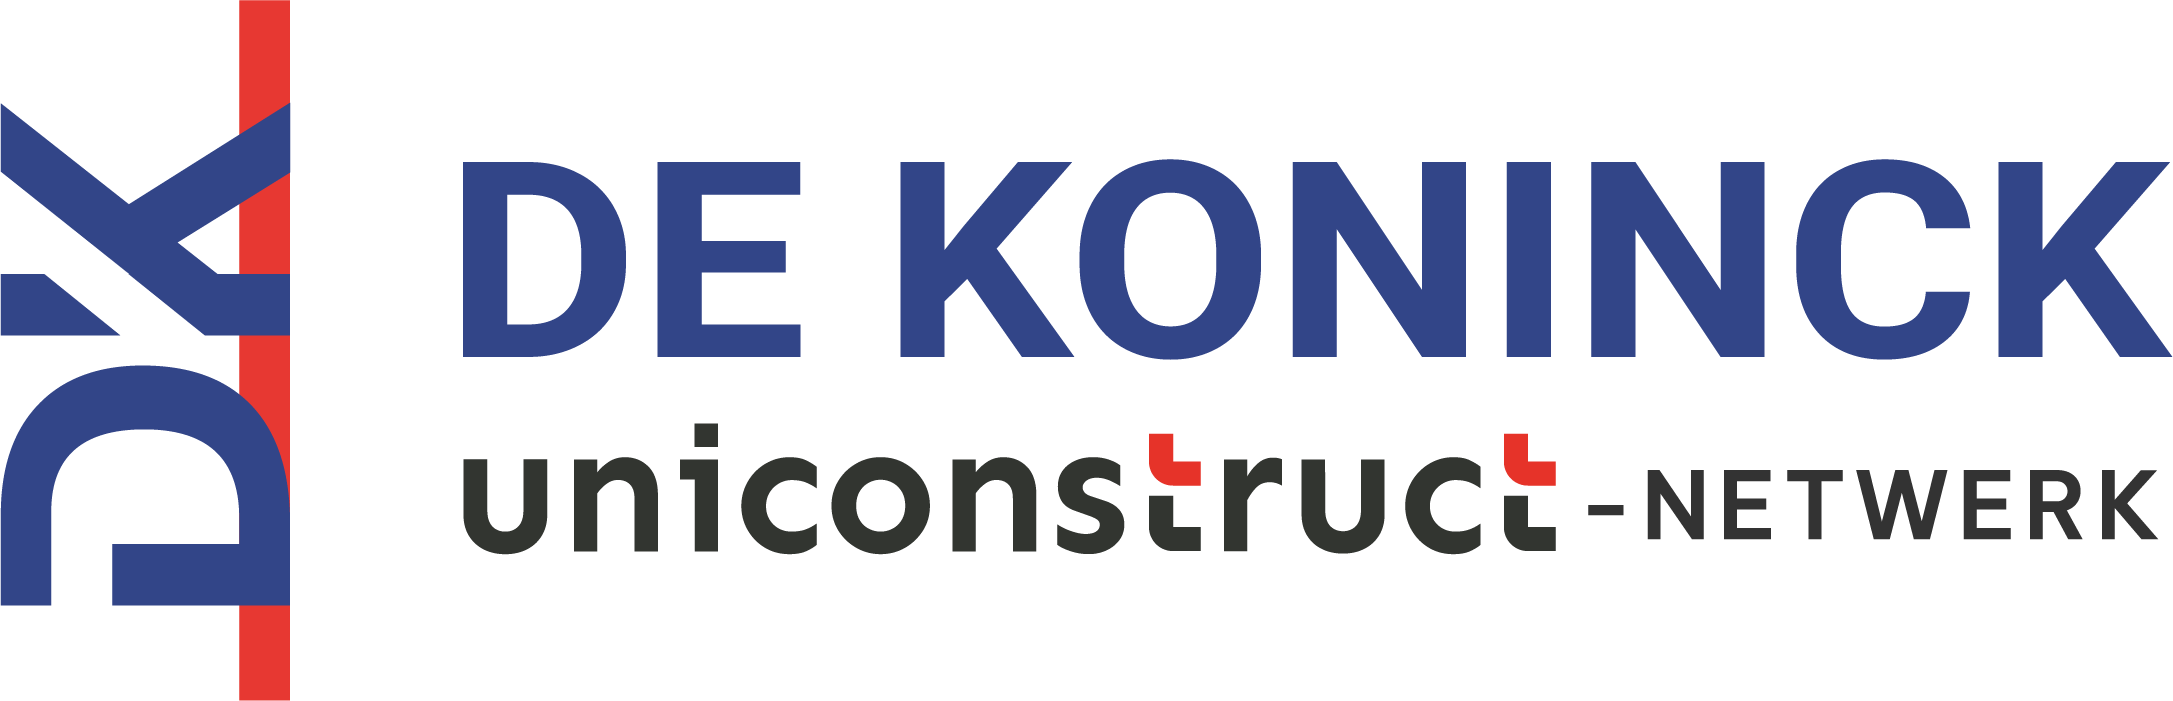 De Koninck - Uniconstruct-netwerk